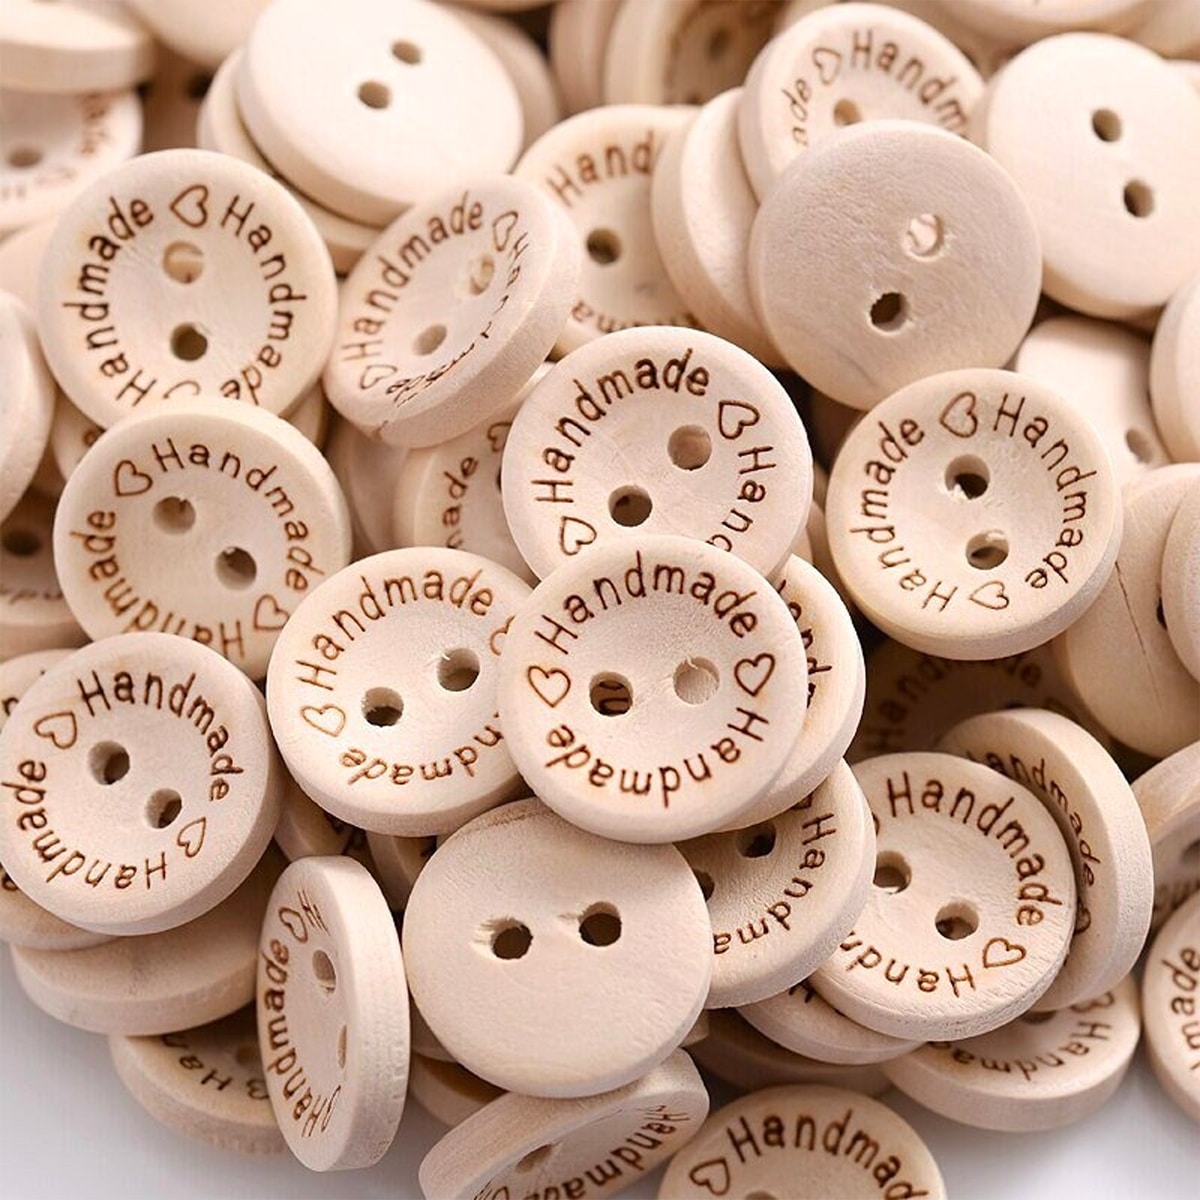 Bottoni in legno personalizzati, articoli a maglia e all'uncinetto